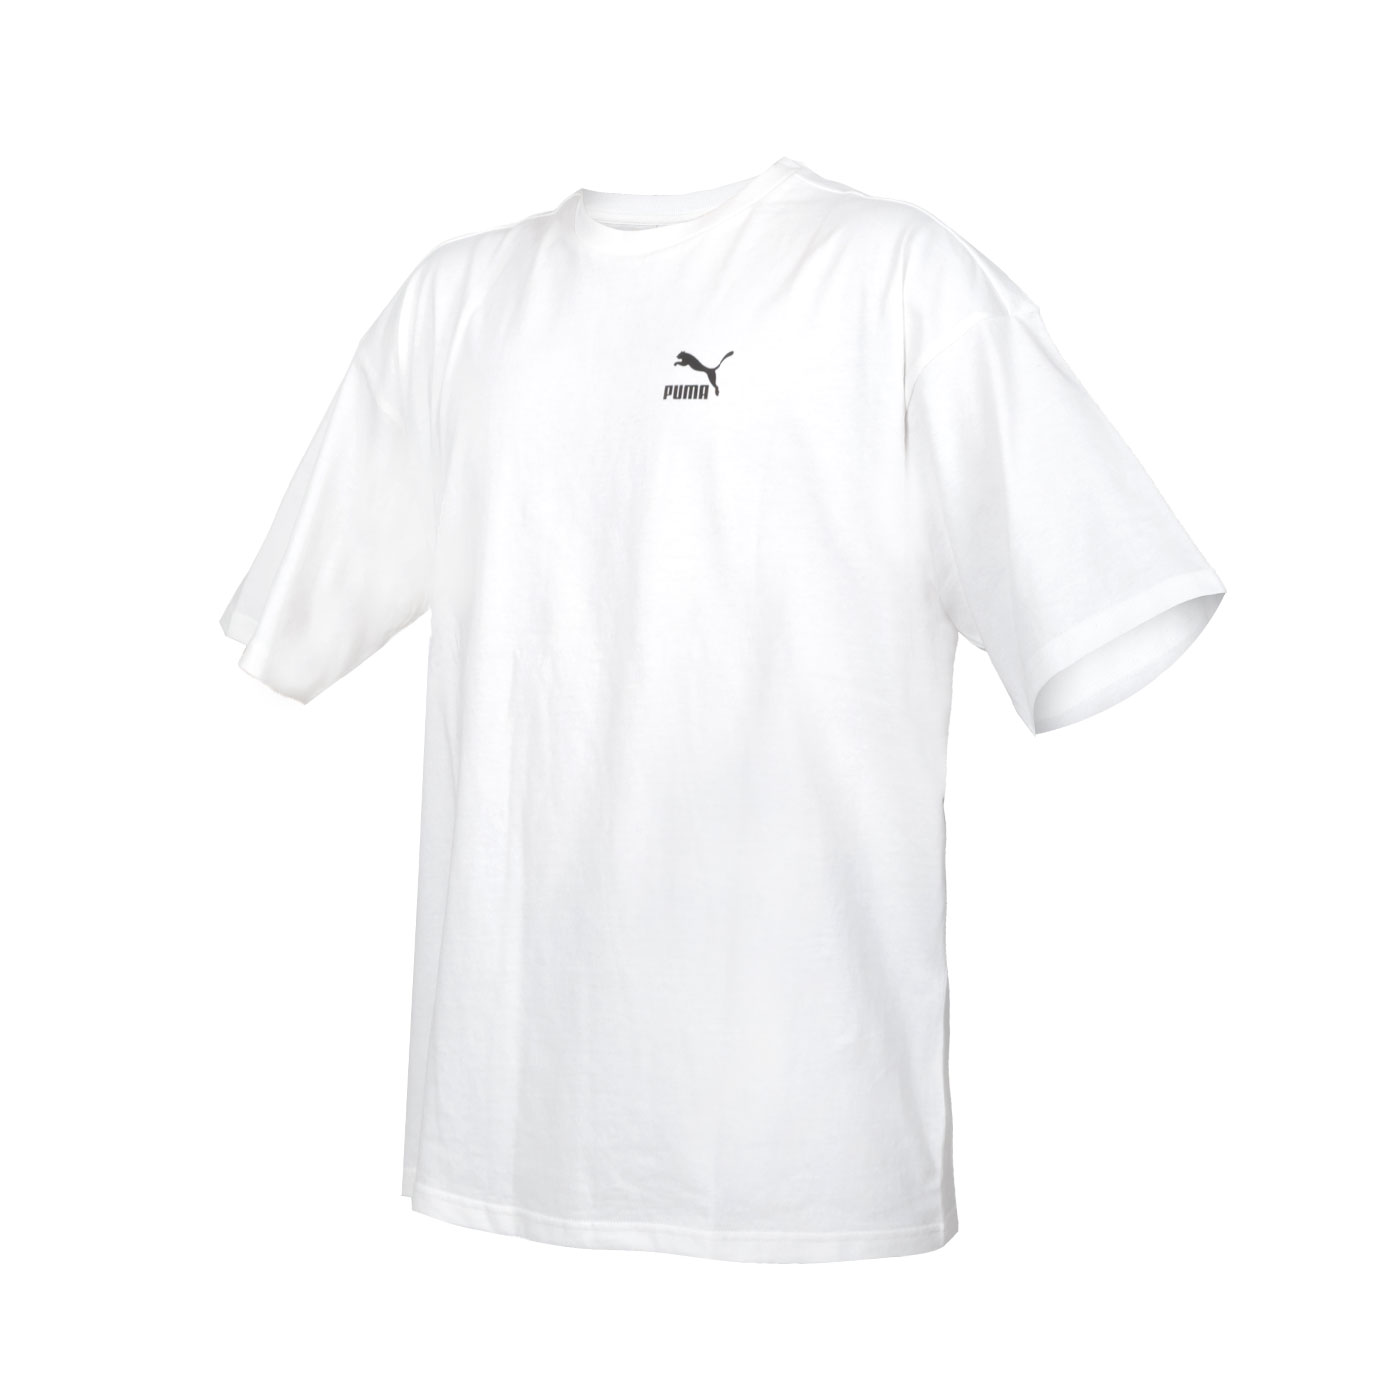 PUMA 男款流行系列Better Classics寬版短袖T恤  62131502 - 白黑